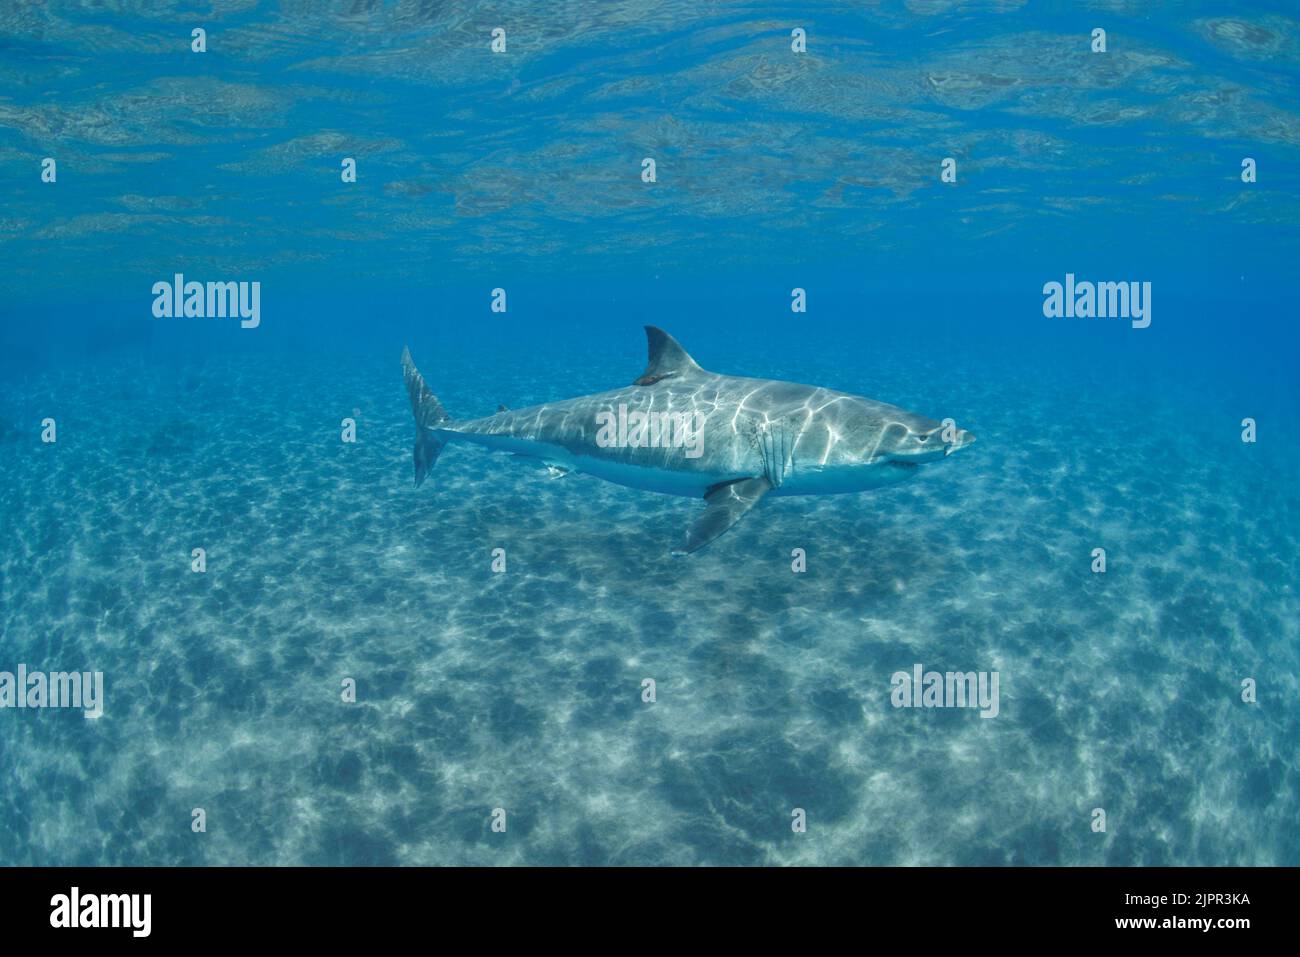 Compuesto digital. Este gran tiburón blanco, Carcharodon carcharias, fue fotografiado frente a la Isla Guadalupe, México y añadido a las aguas cristalinas Foto de stock